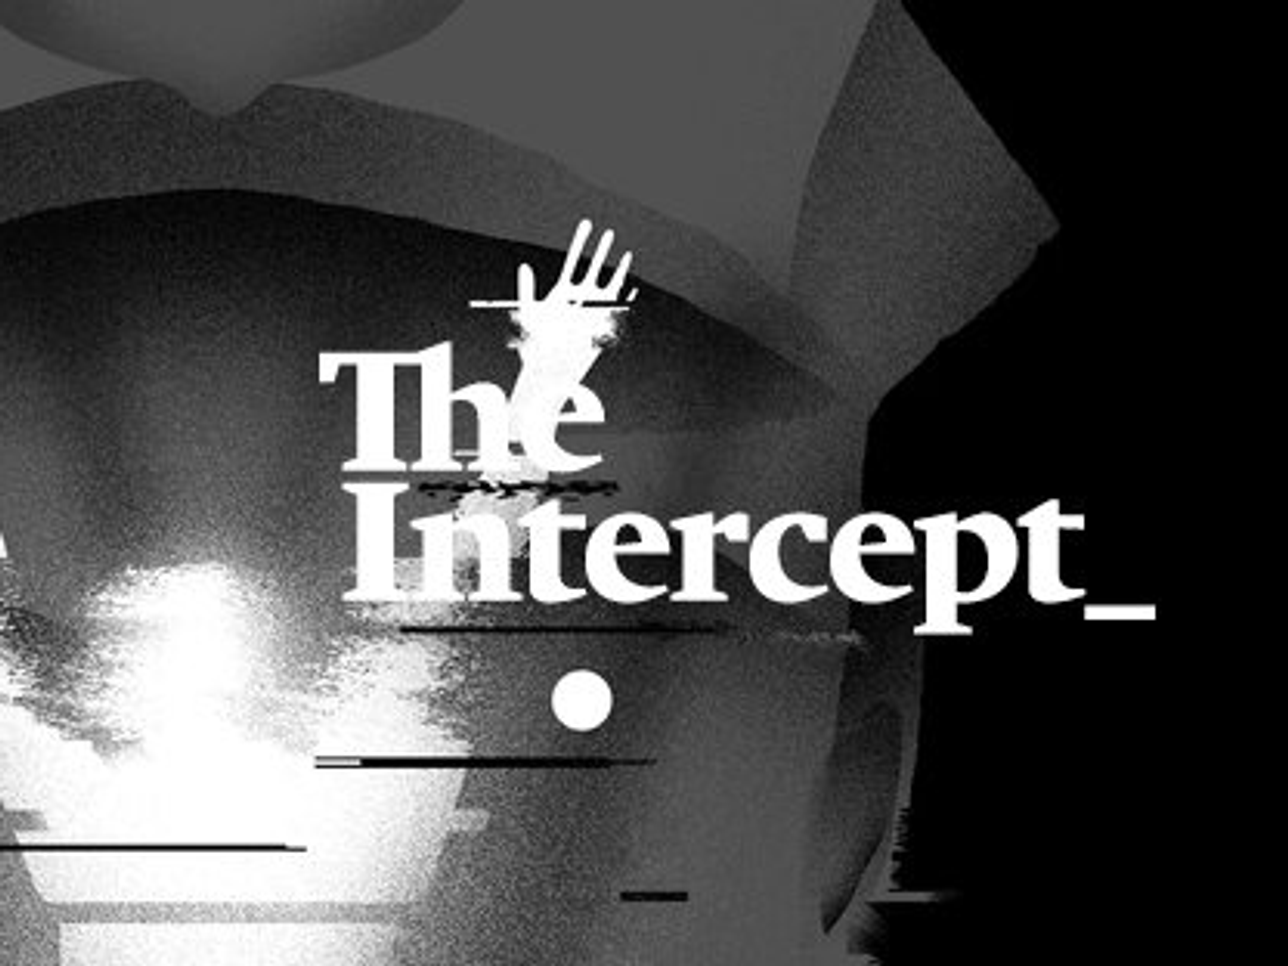 The Intercept's social media header.